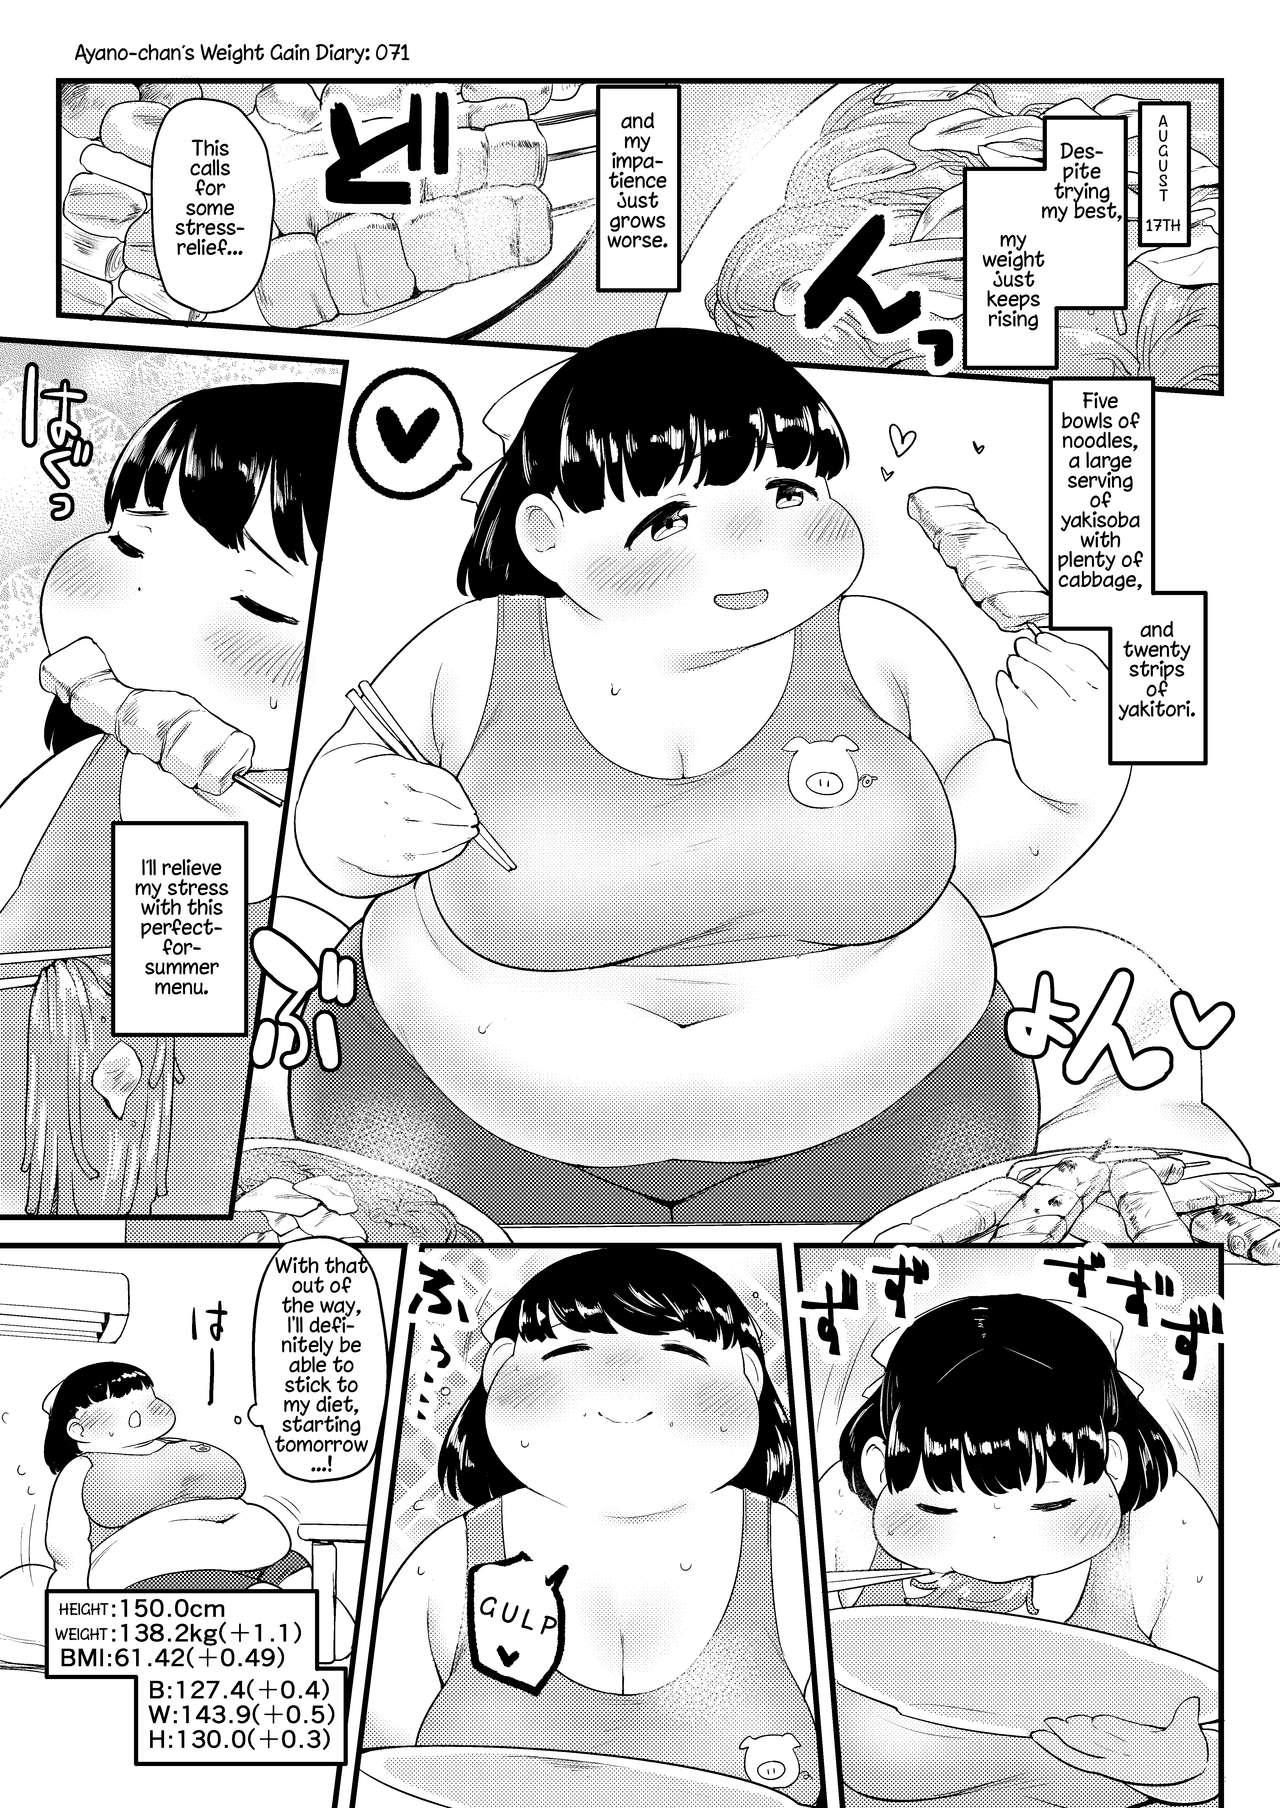 Ayano's Weight Gain Diary 71